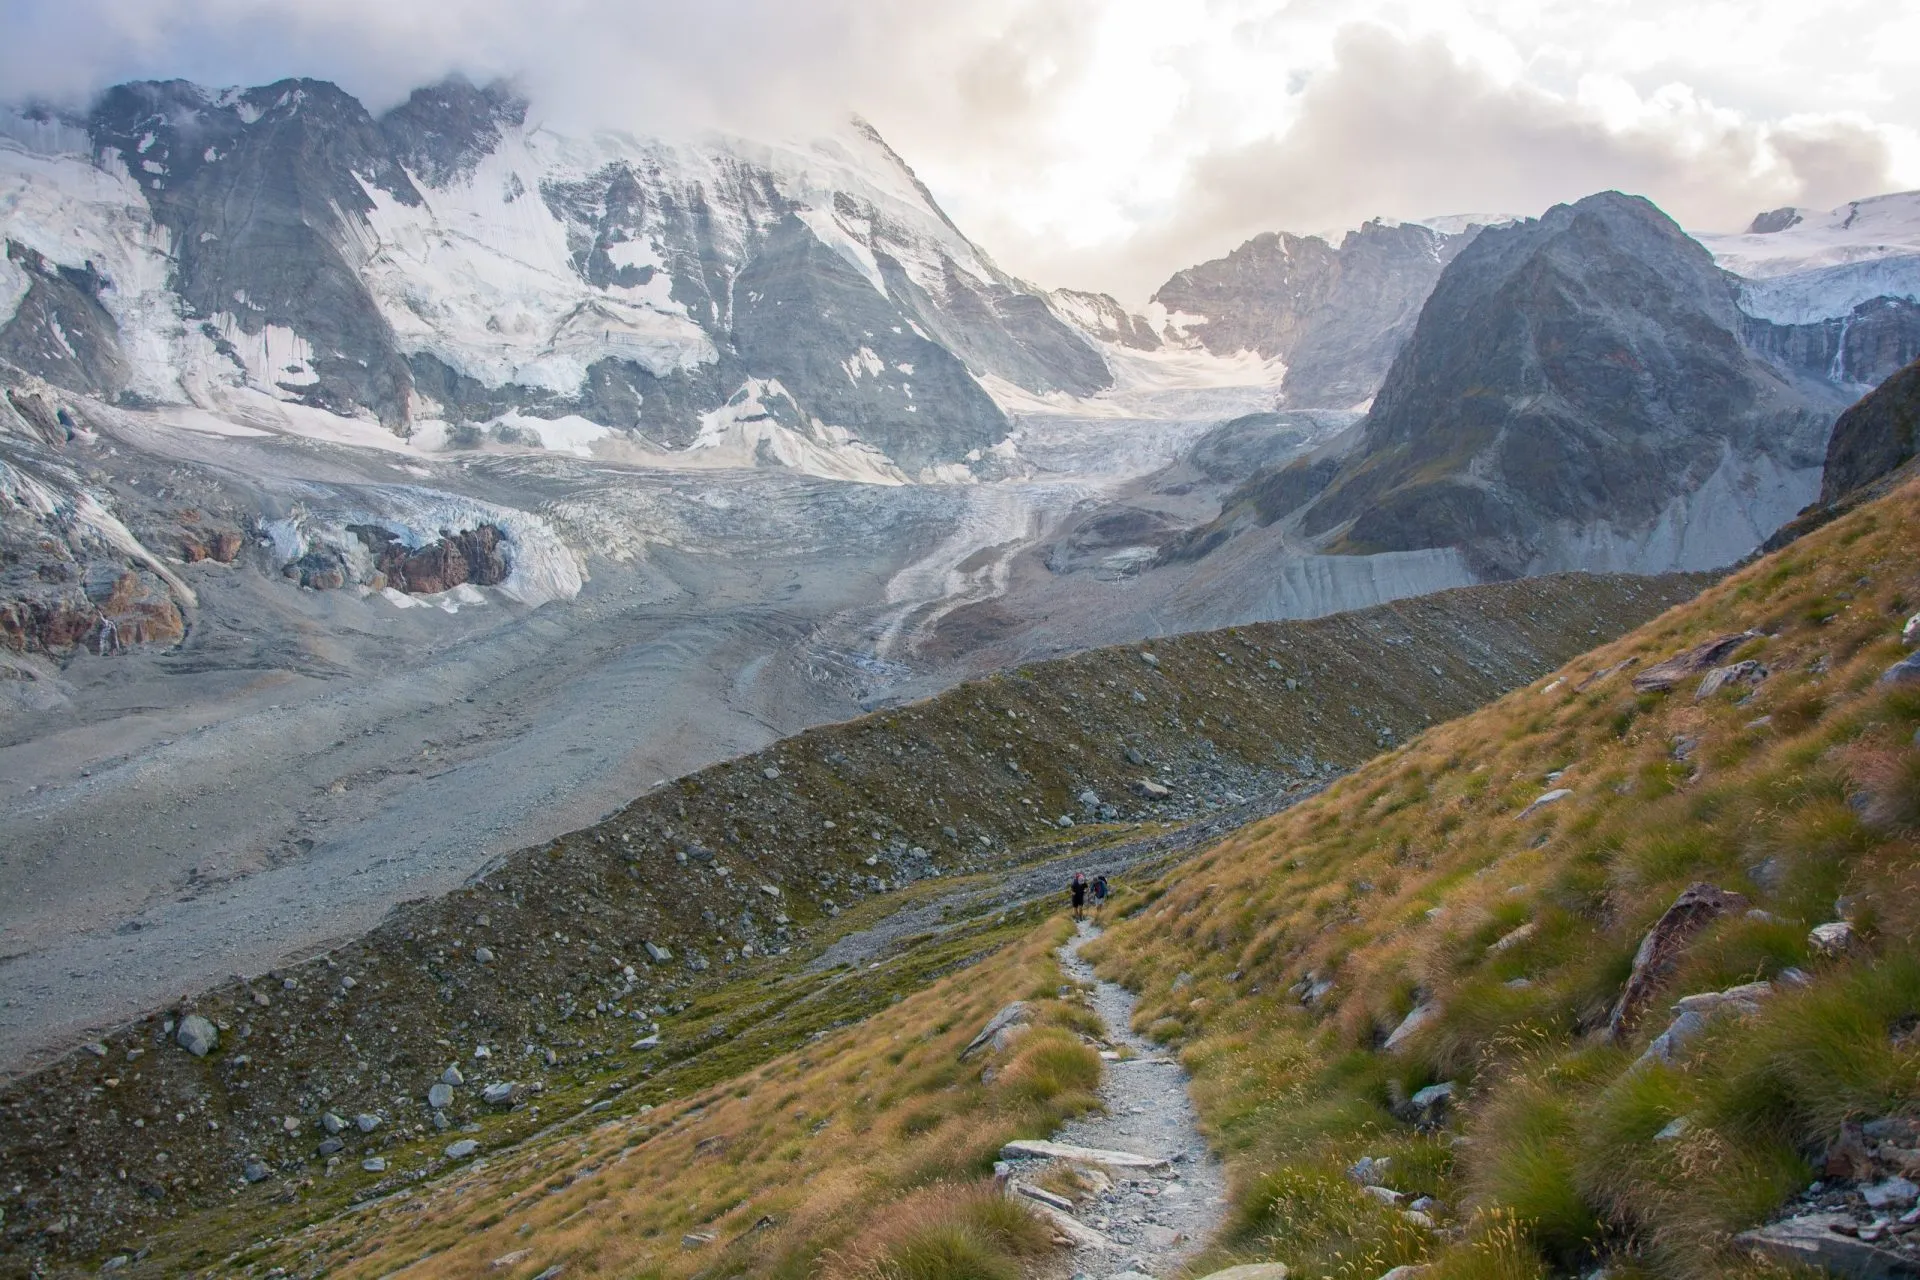 Path below the schonbiel glacier